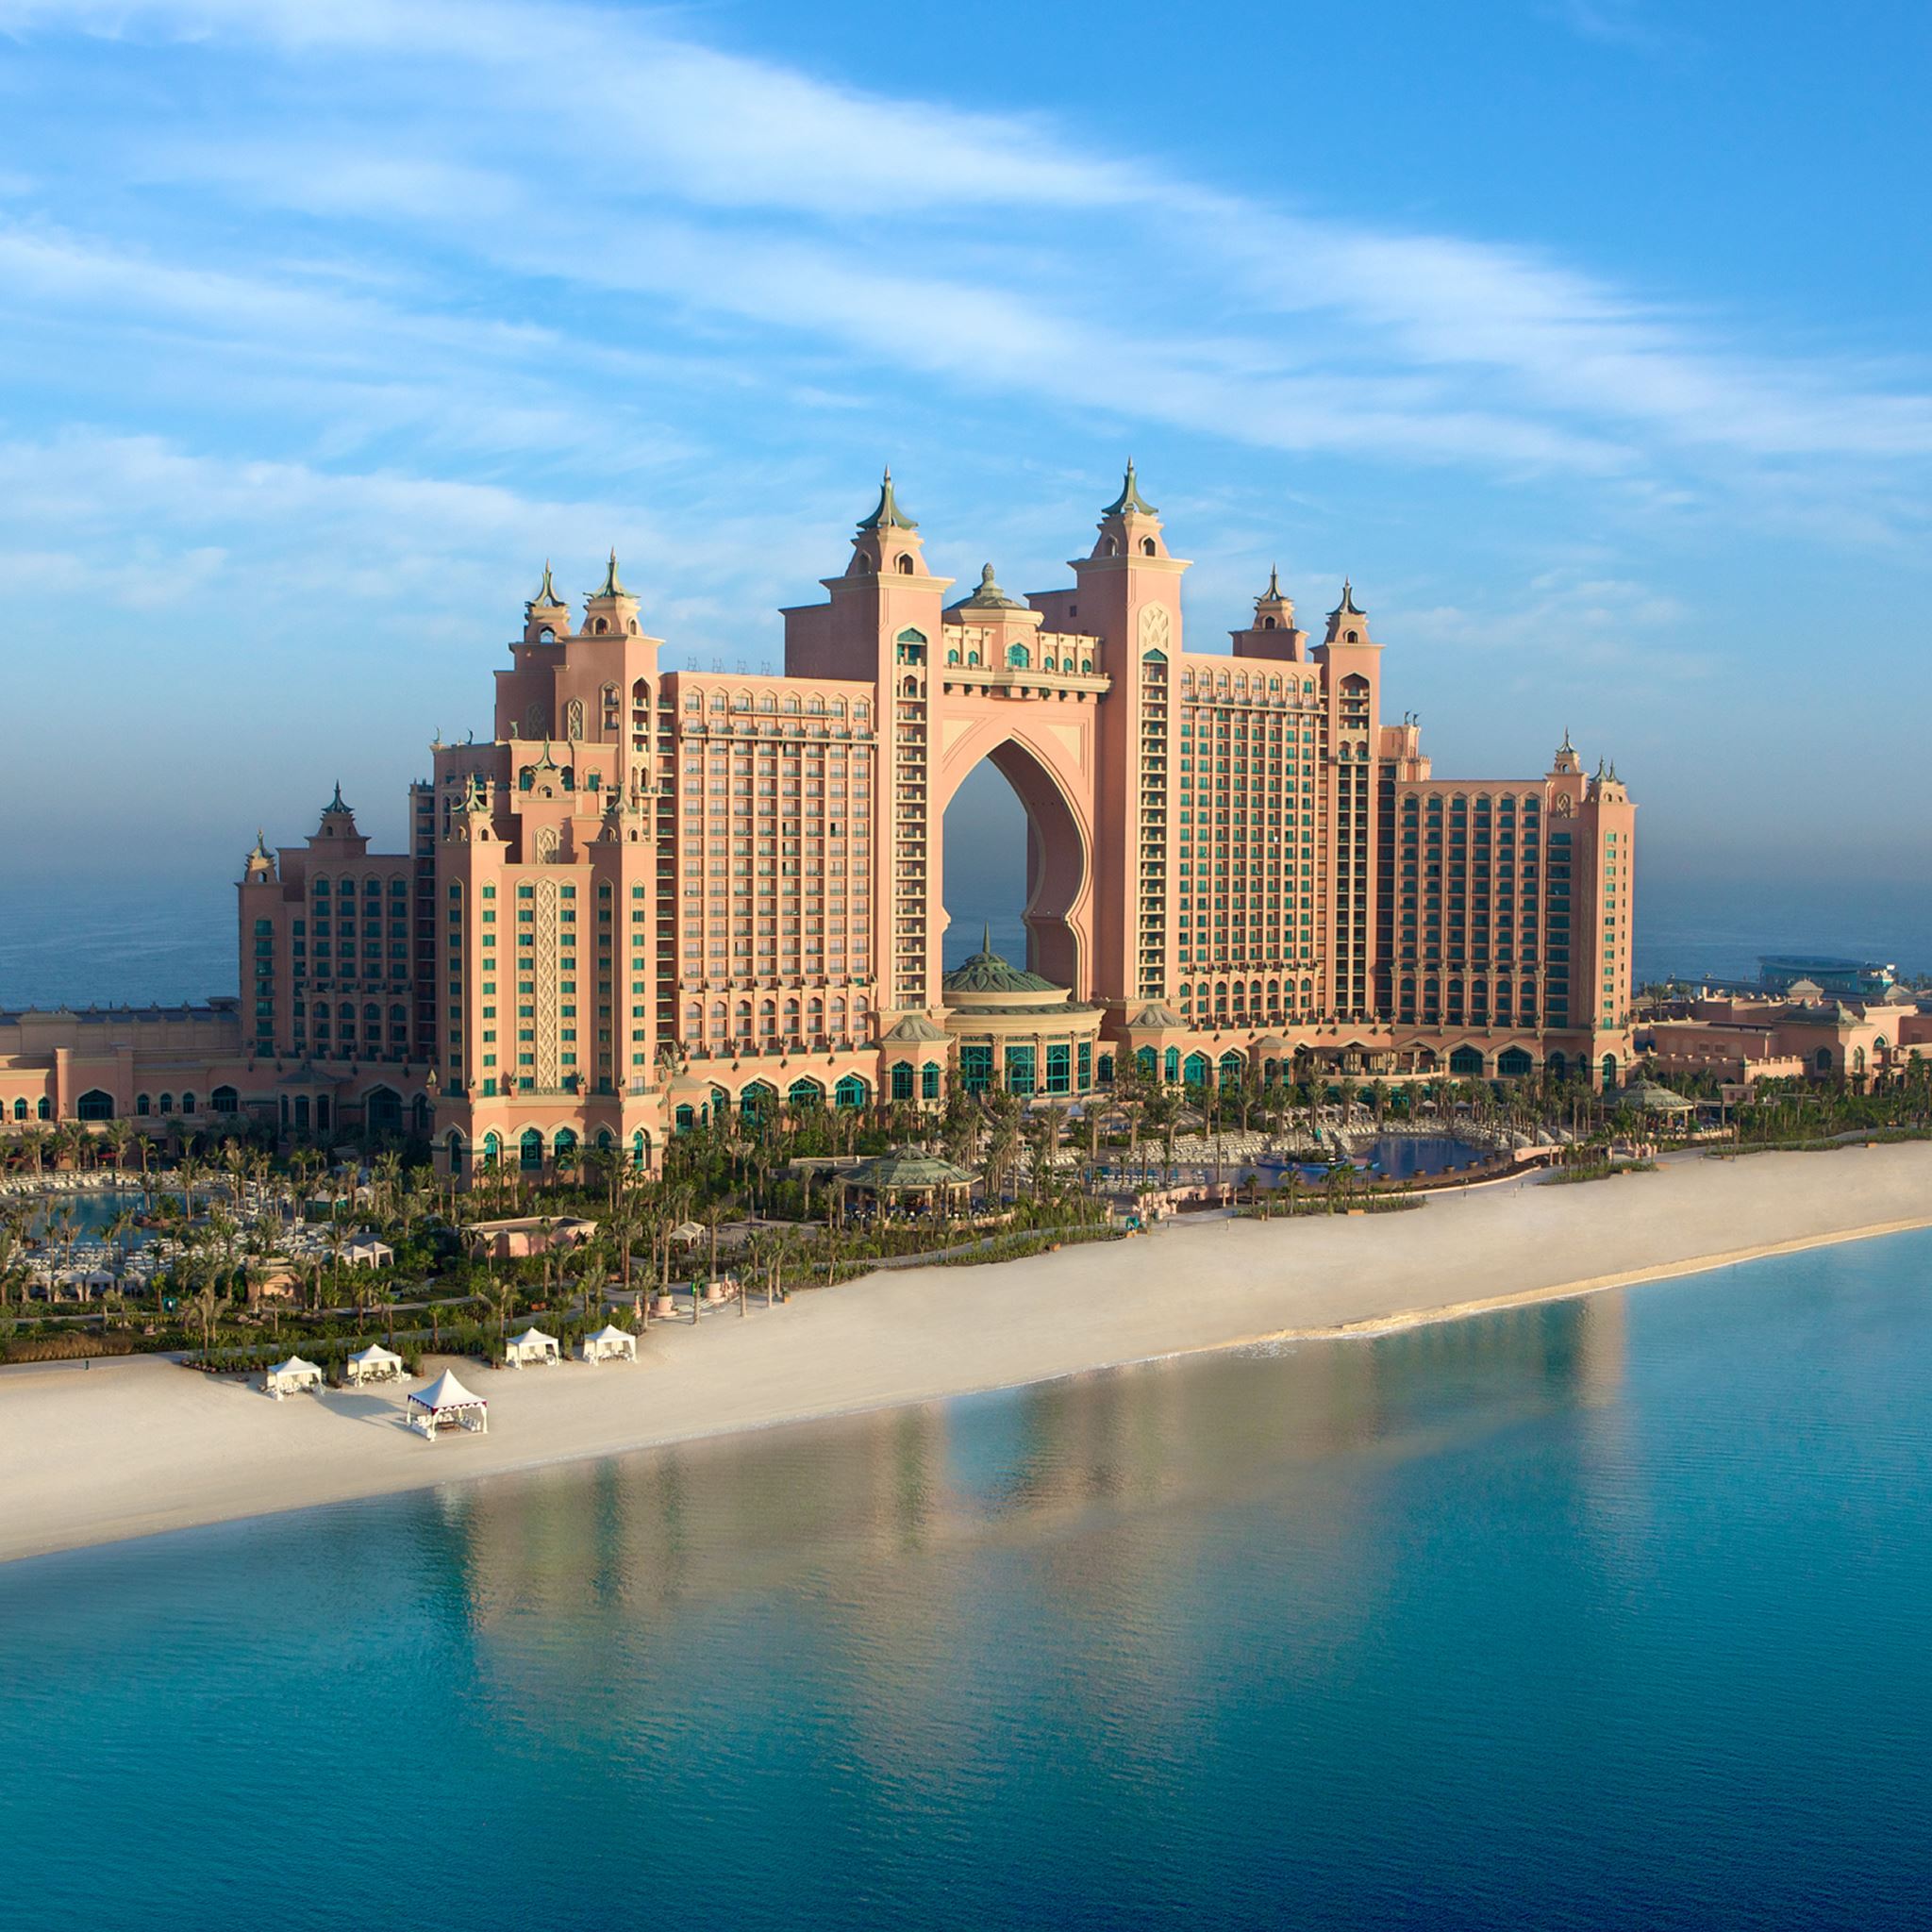 Atlantis the Palm in Dubai iPad Air wallpaper 